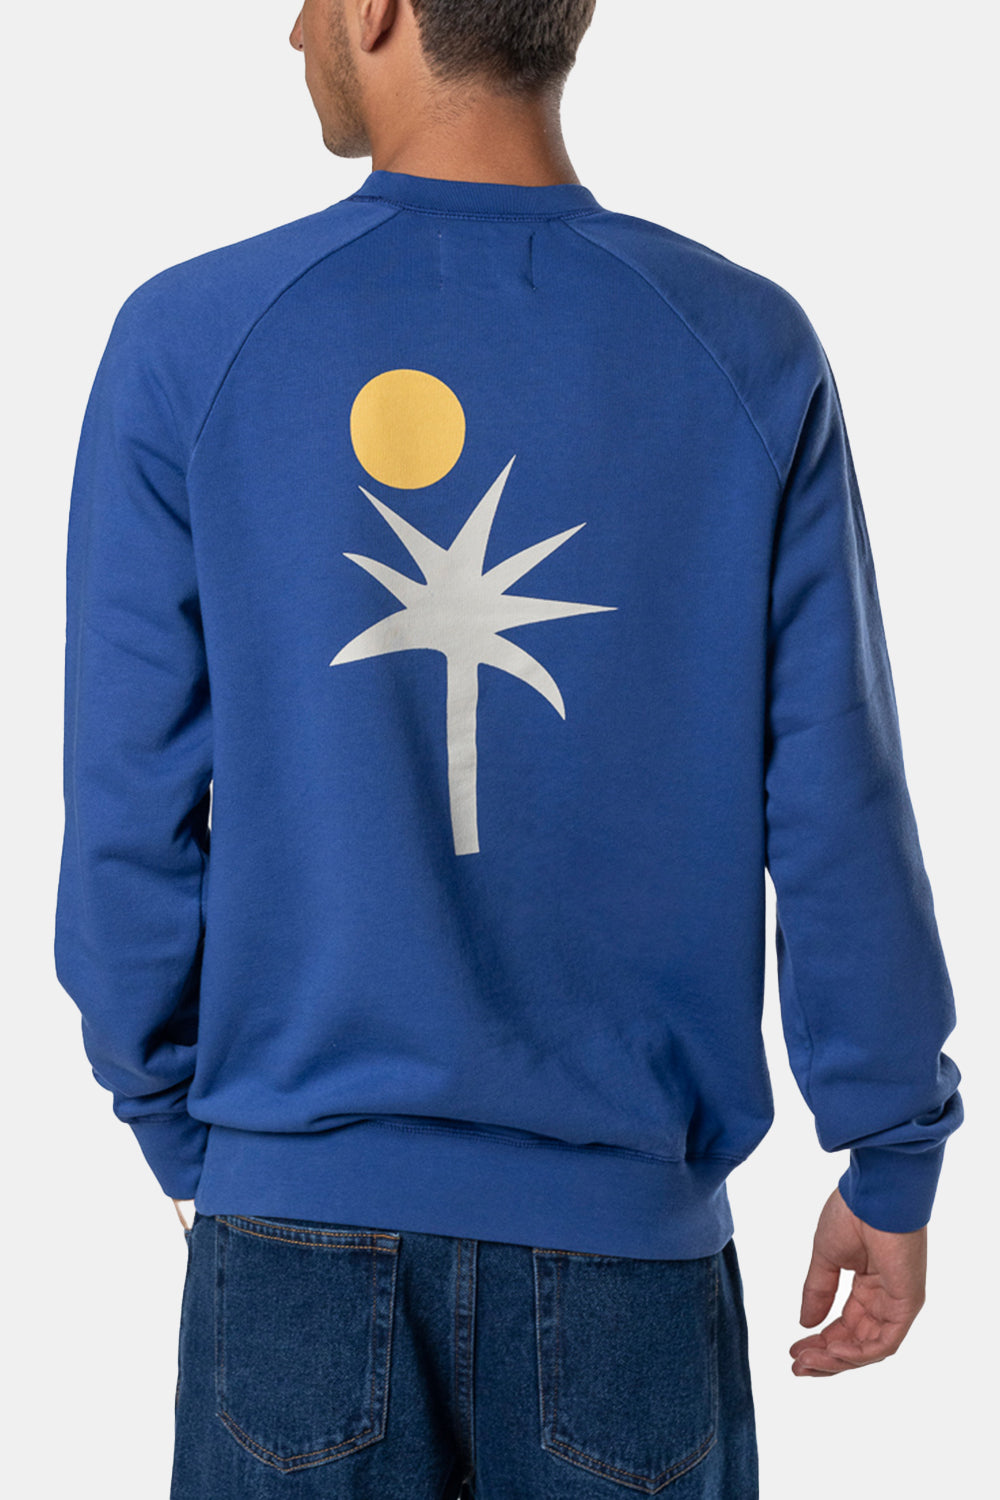 La Paz Cunha Sweatshirt (Palm Blue)
